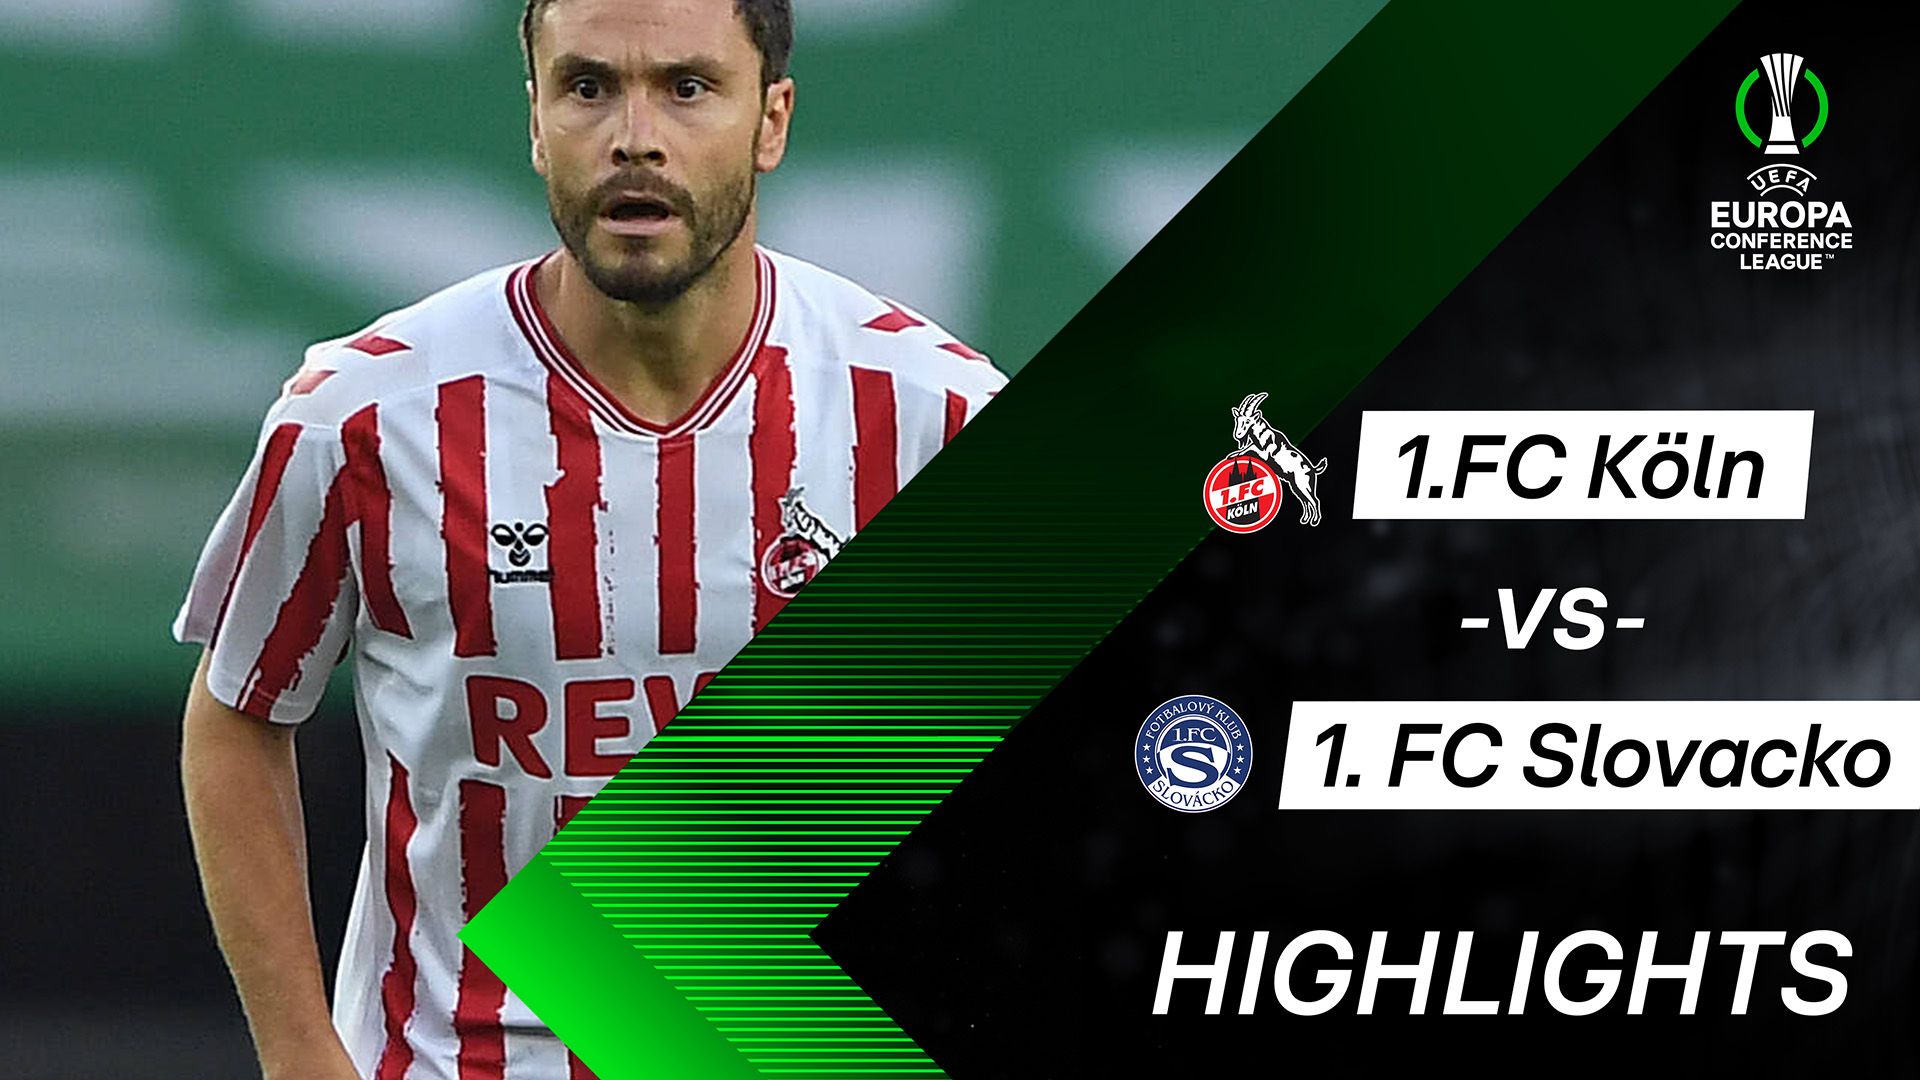 Highlights: 1. FC Köln vs. 1. FC Slovacko